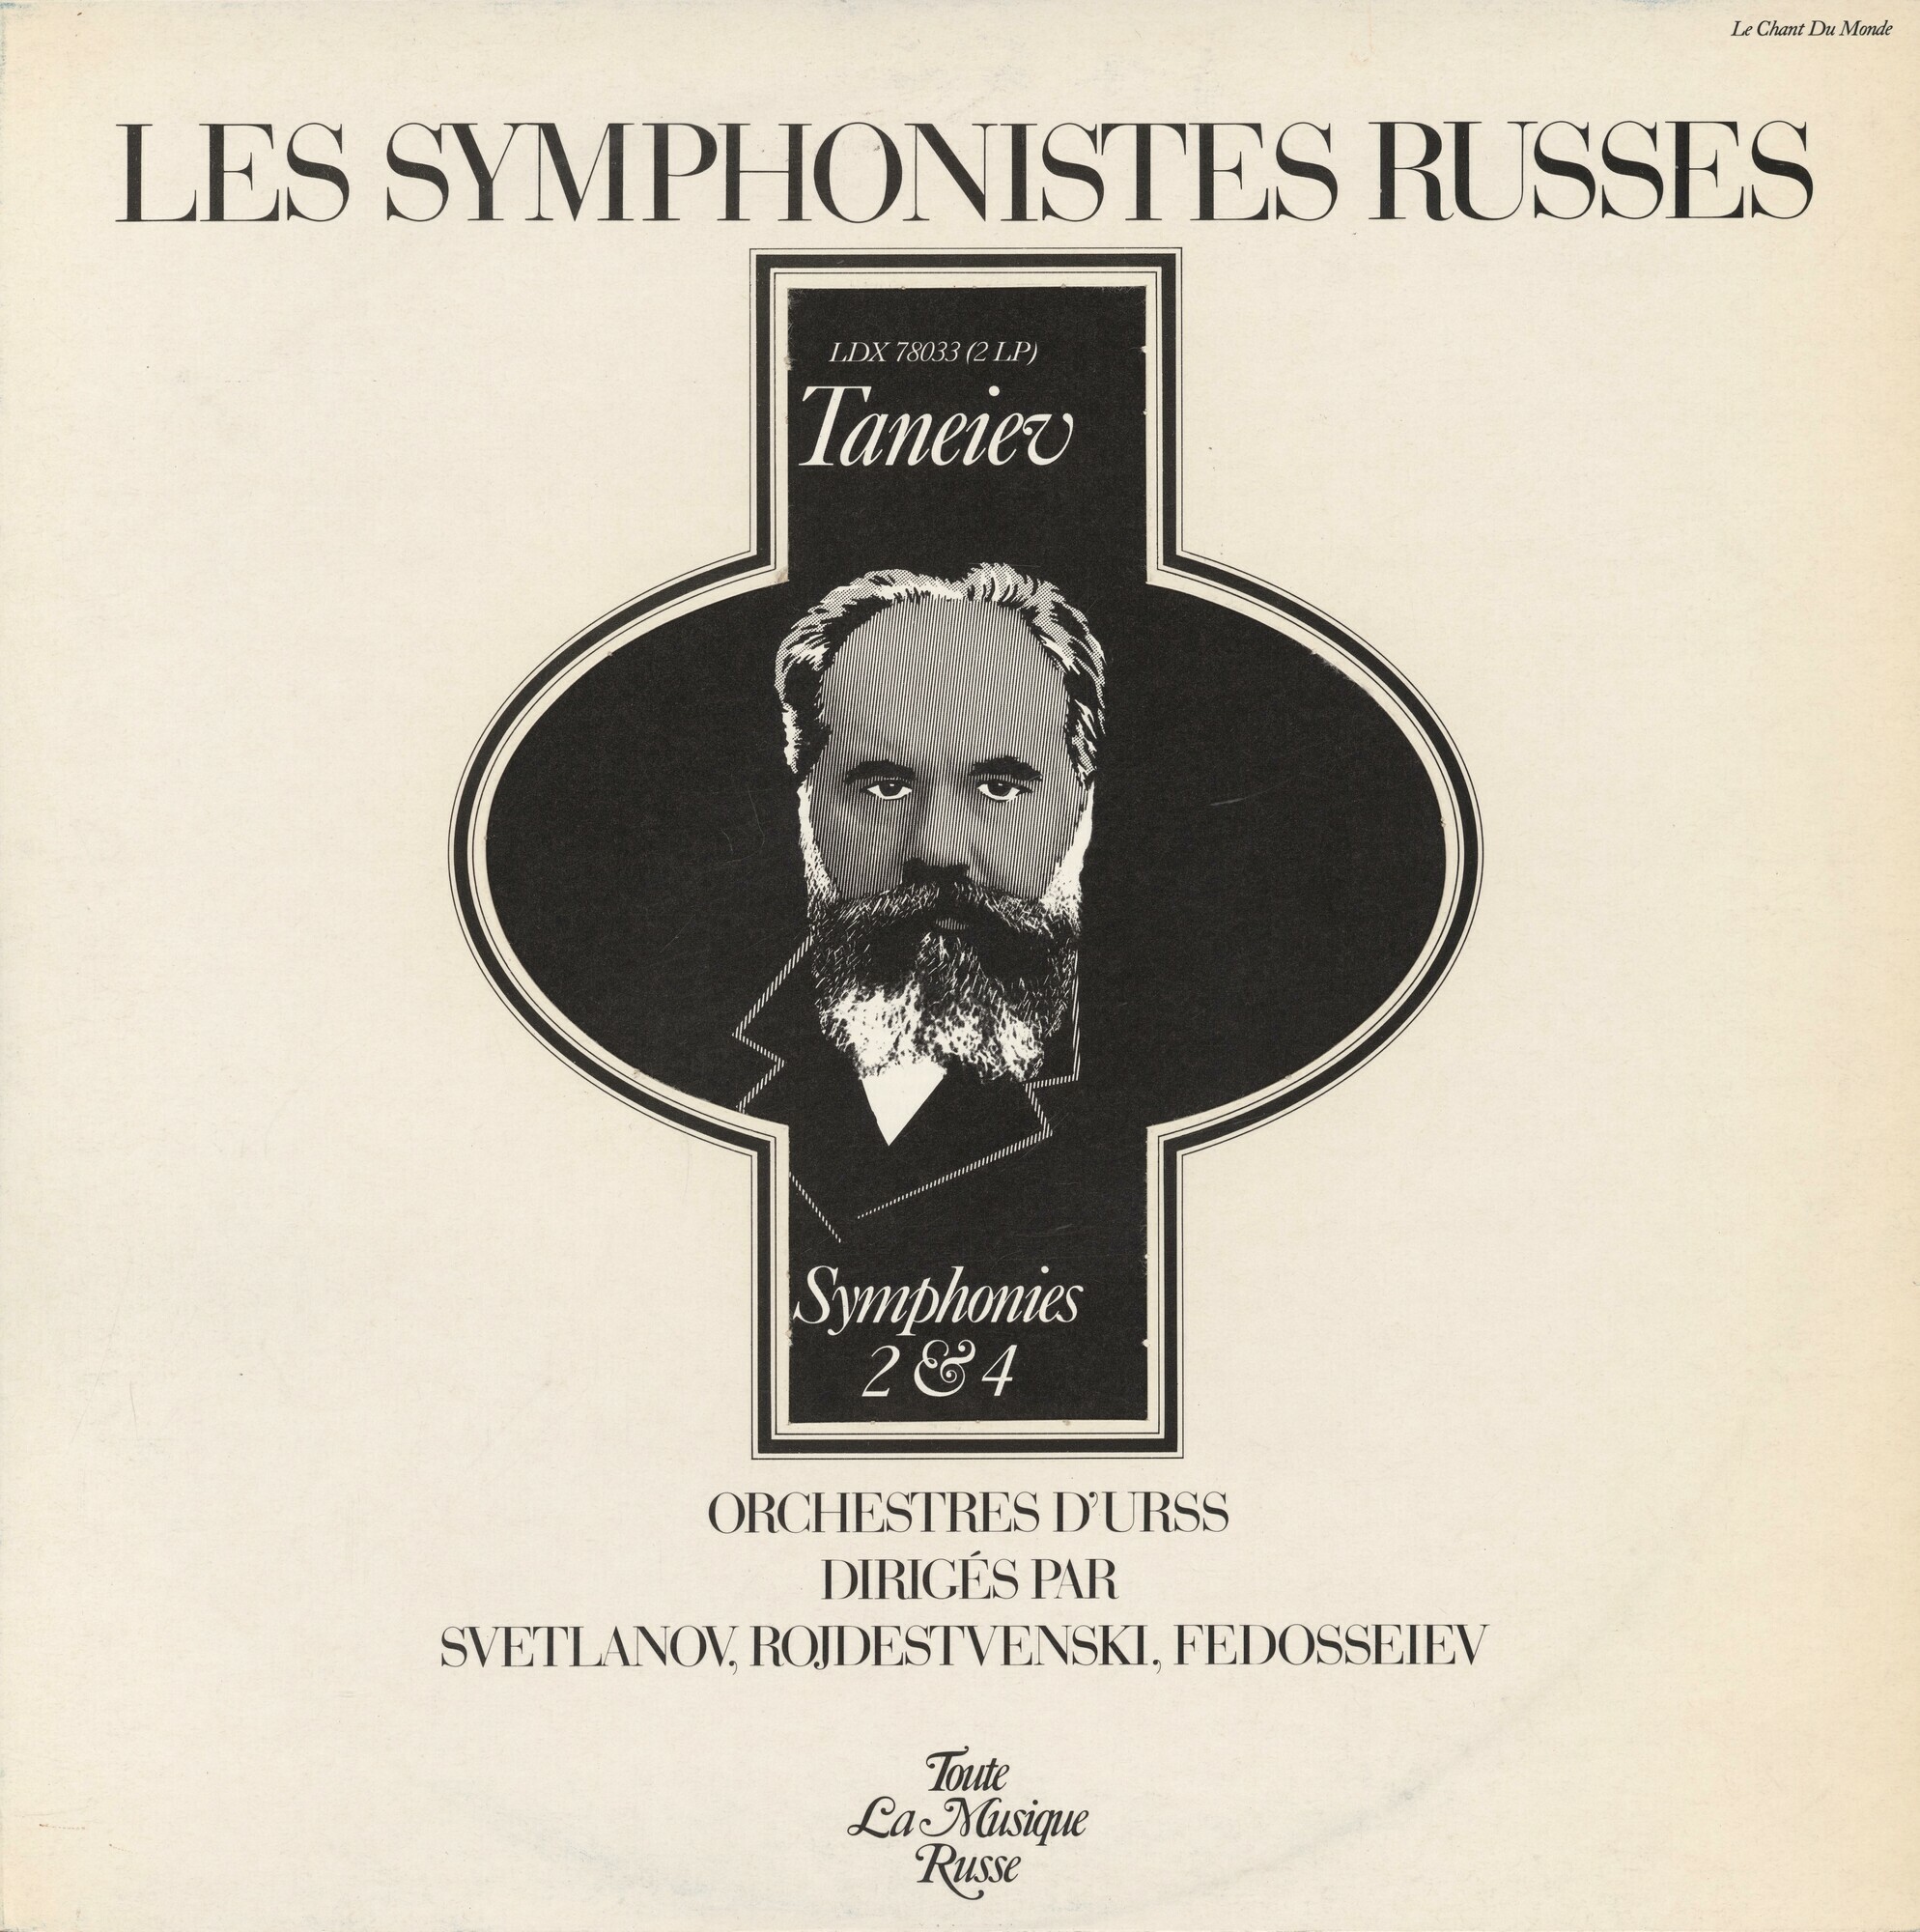 Les Symphonistes Russes. Taneiev. Symphonies 2 & 4 (Le Chant Du Monde ‎LDX 78033, 2LP)